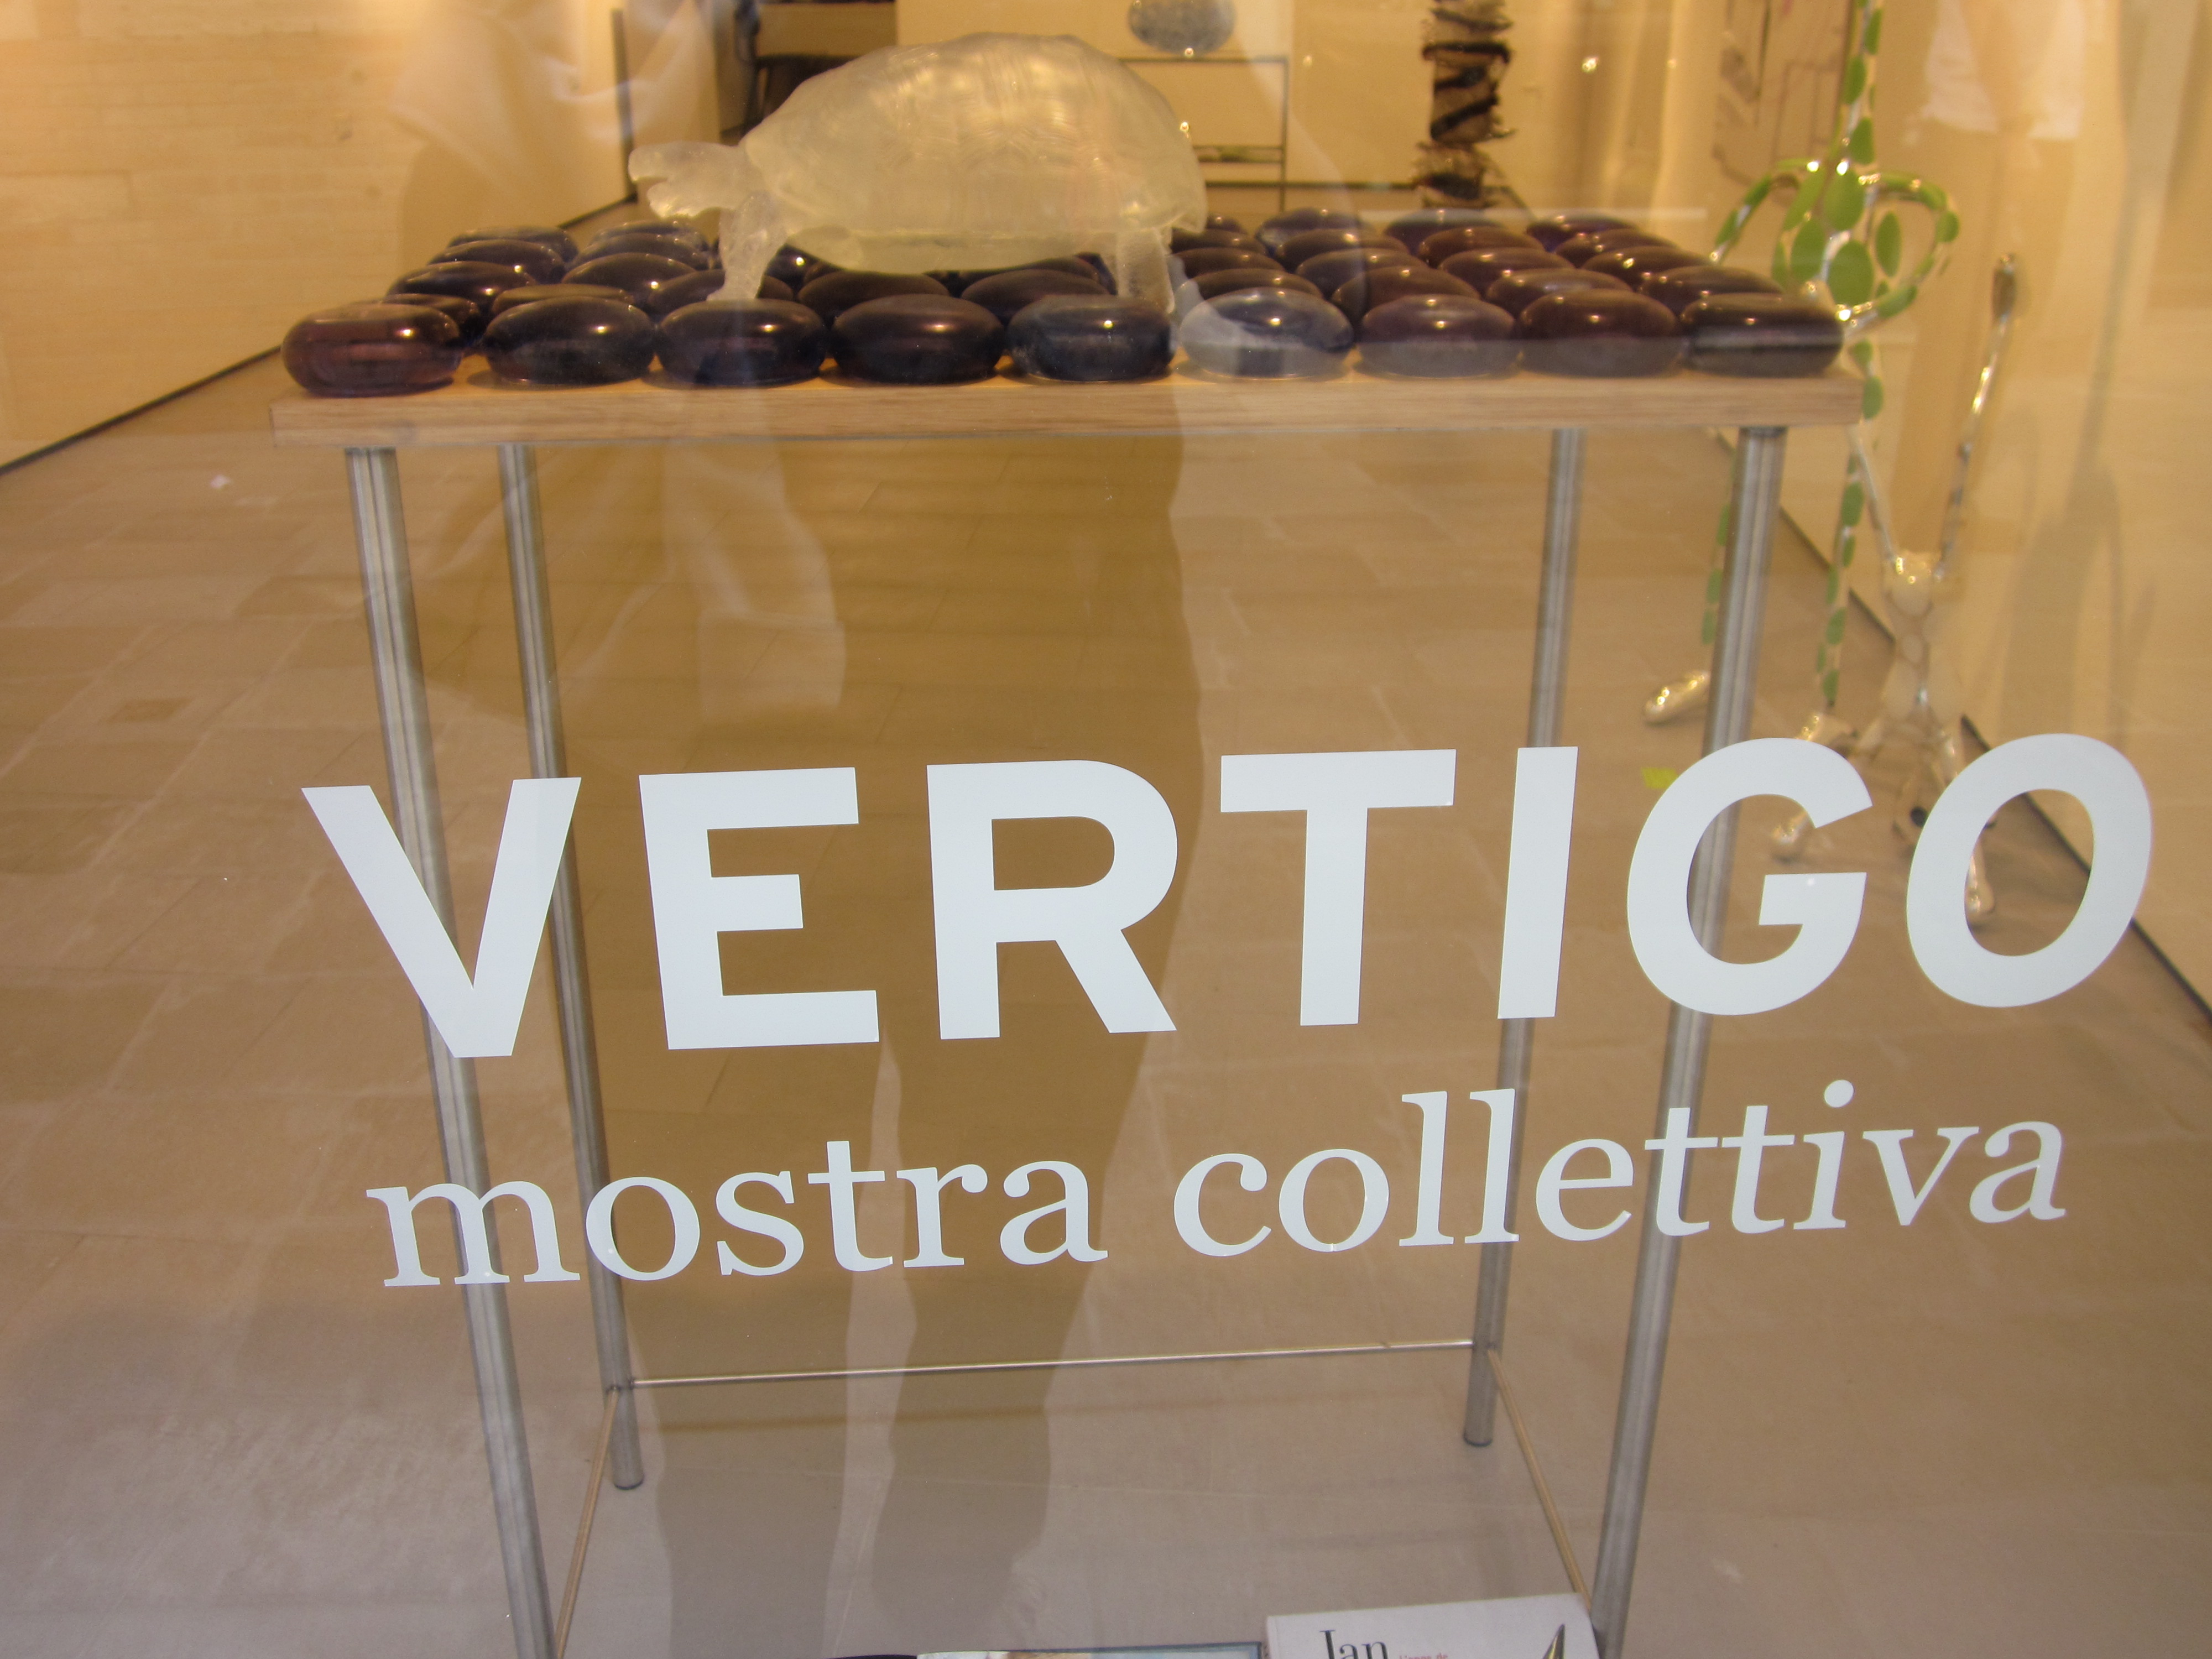 A Local Art Gallery Hosting a Show - Vertigo!